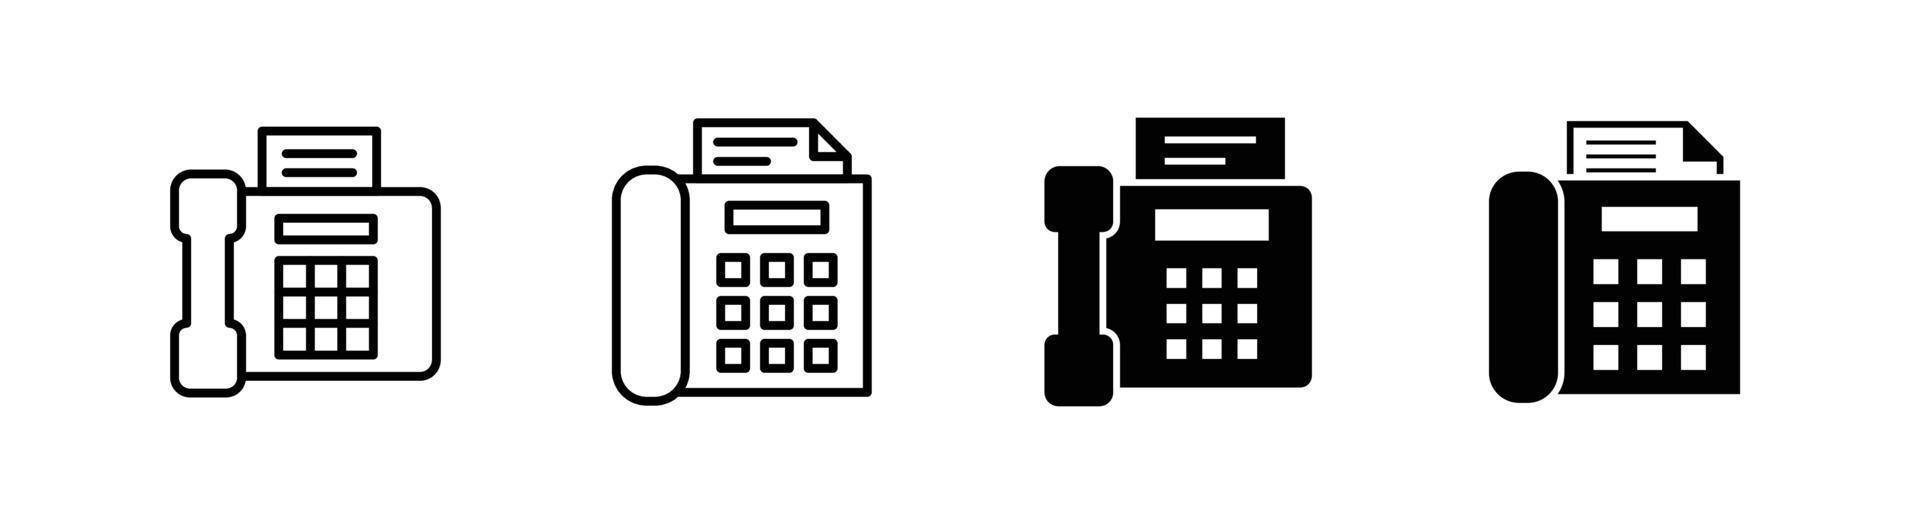 elemento de diseño de icono de máquina de fax adecuado para sitio web, diseño de impresión o aplicación vector